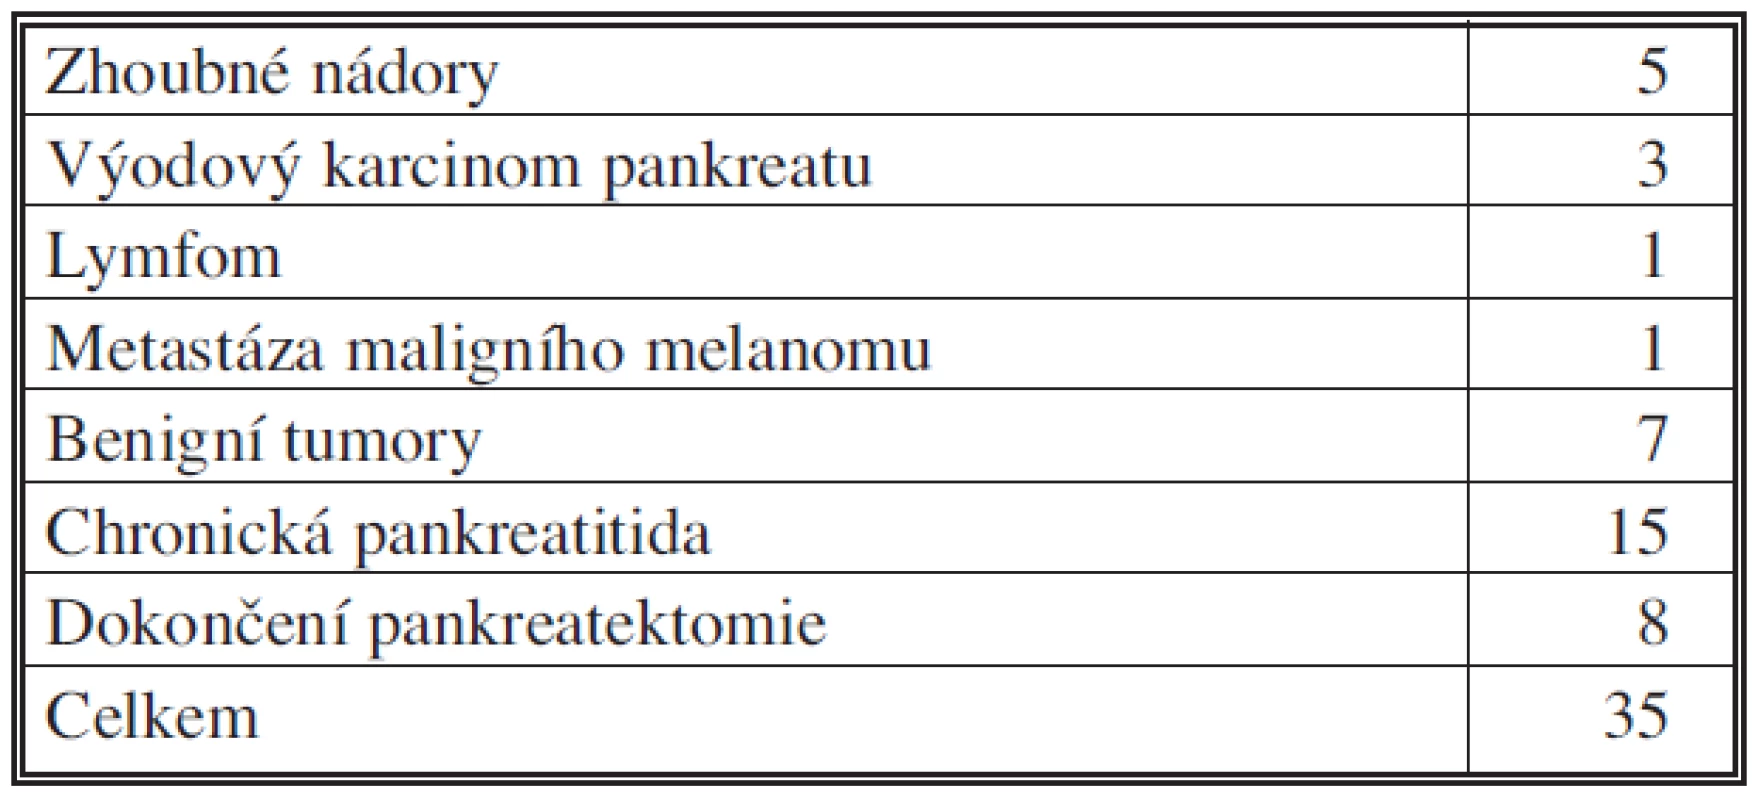 Levostranné resekce pankreatu podle diagnóz, 2006 – IX.2010